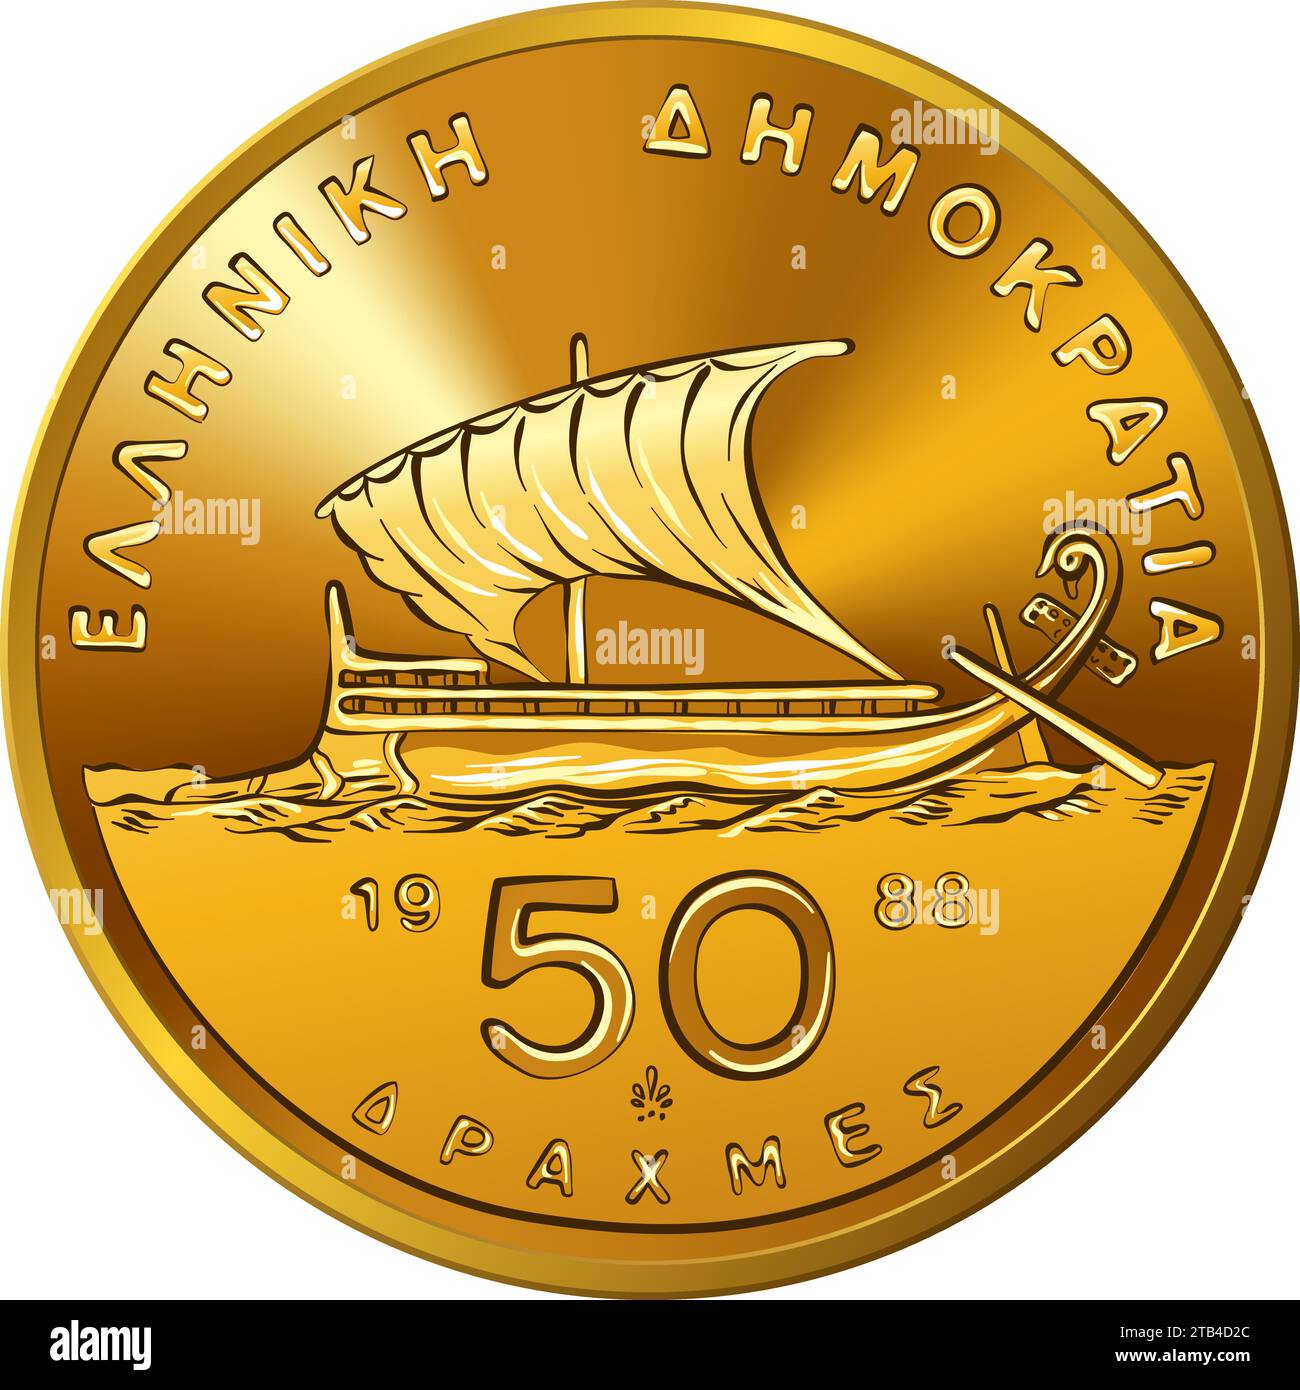 Inversione vettoriale di moneta greca, moneta d'oro da 50 dracme con trireme Illustrazione Vettoriale